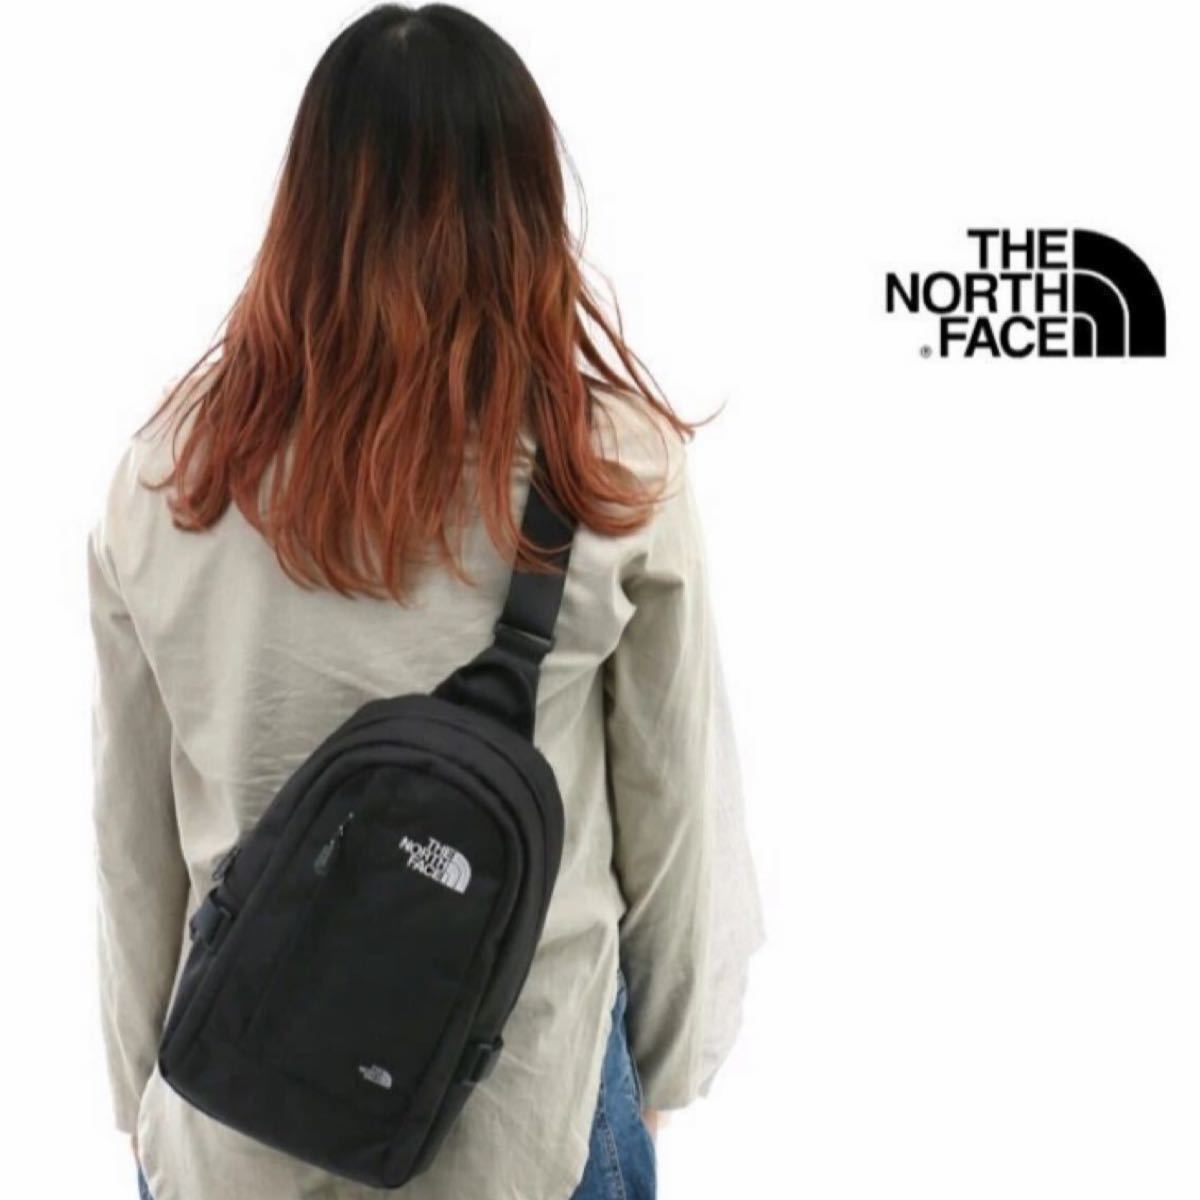 THE NORTH FACE  ノースフェイス  新品未使用  韓国正規品  ショルダーバッグ  スリングバッグ  クロスバッグ 